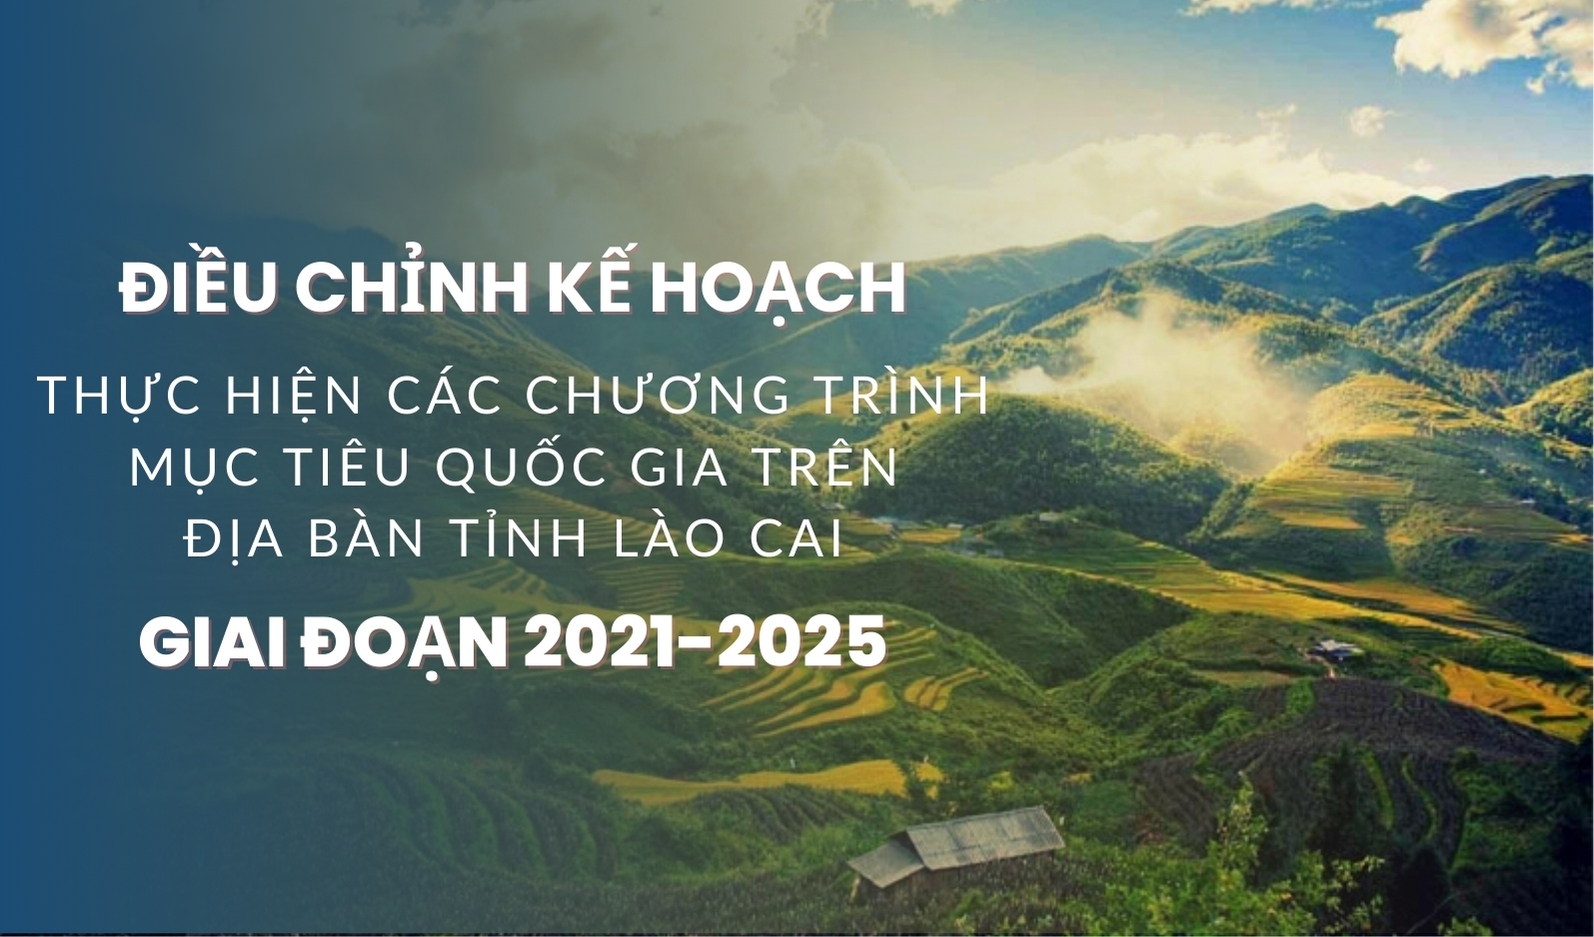 [Infographic] Điều chỉnh kế hoạch thực hiện các Chương trình mục tiêu quốc gia trên địa bàn tỉnh Lào Cai, giai đoạn 2021-2025